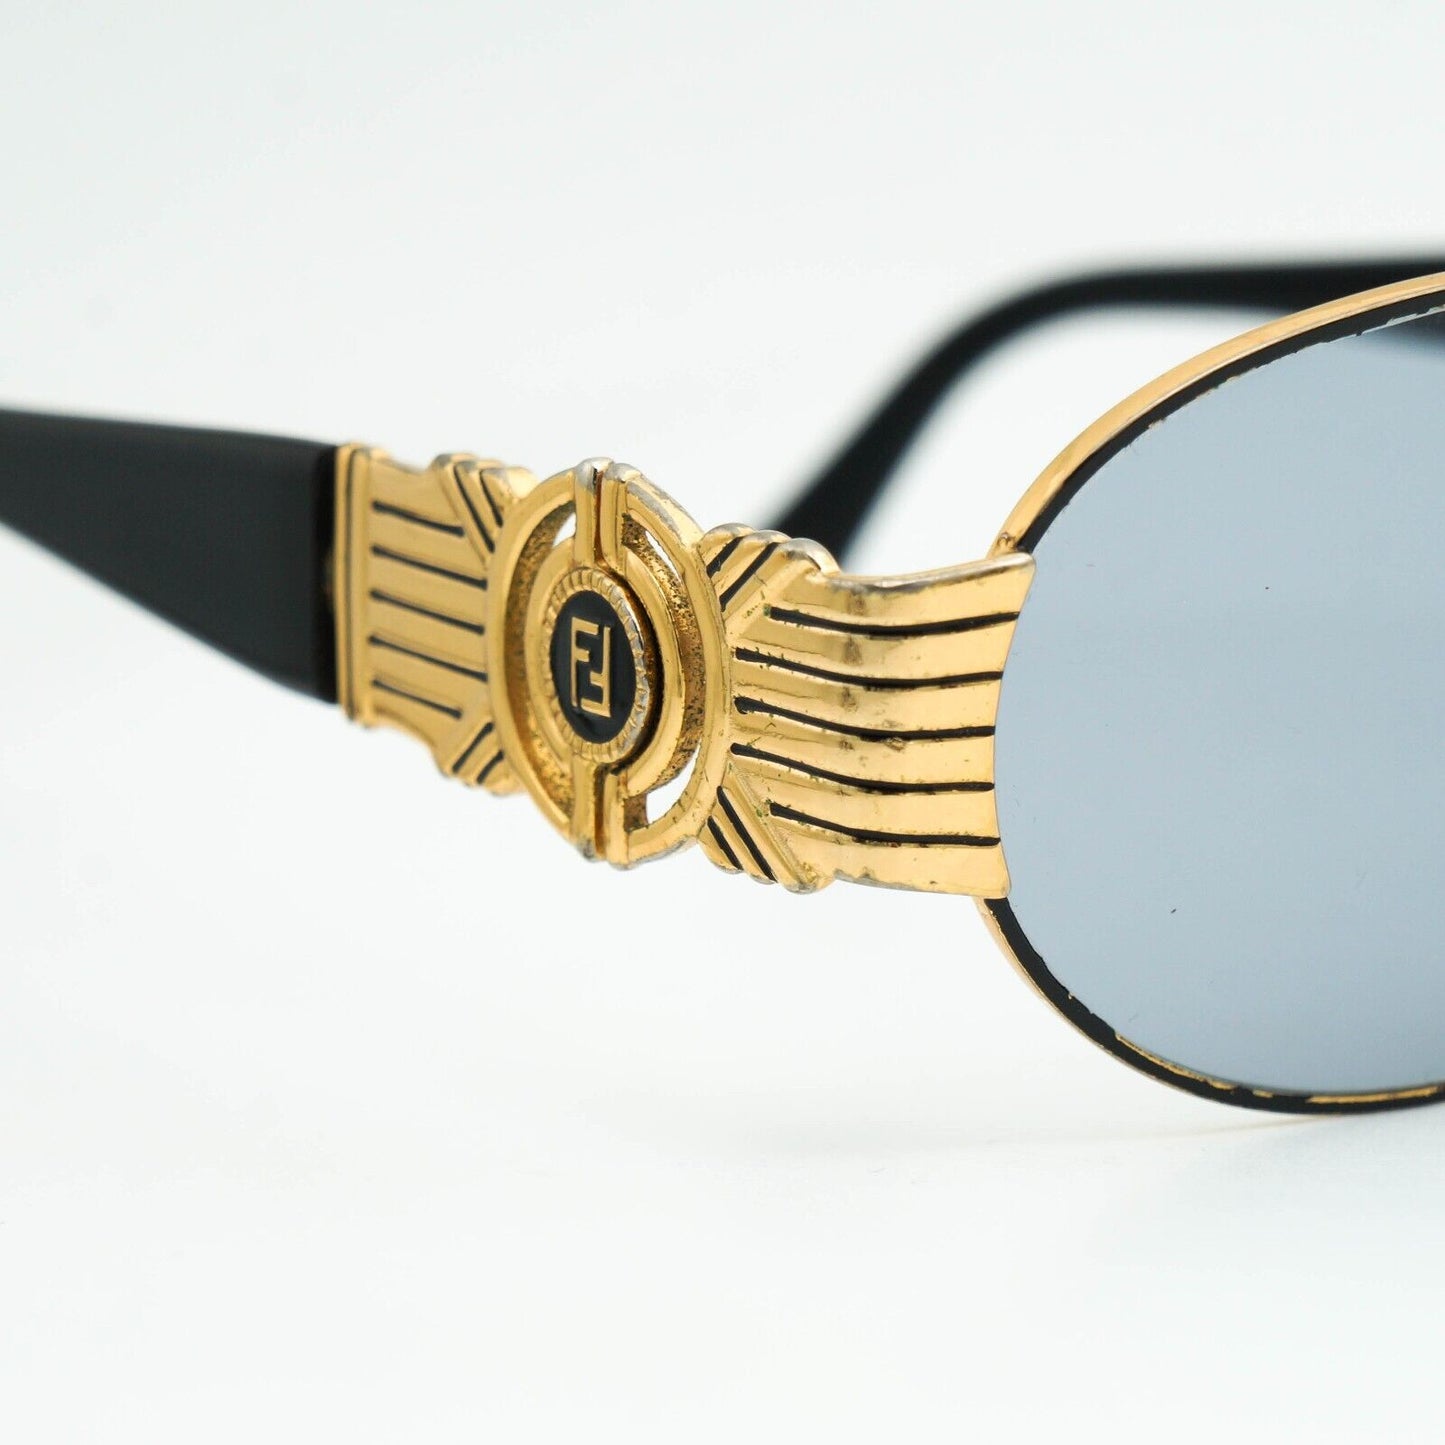 FENDI SL 7034 Gold Oval Sunglasses Vintage 90s